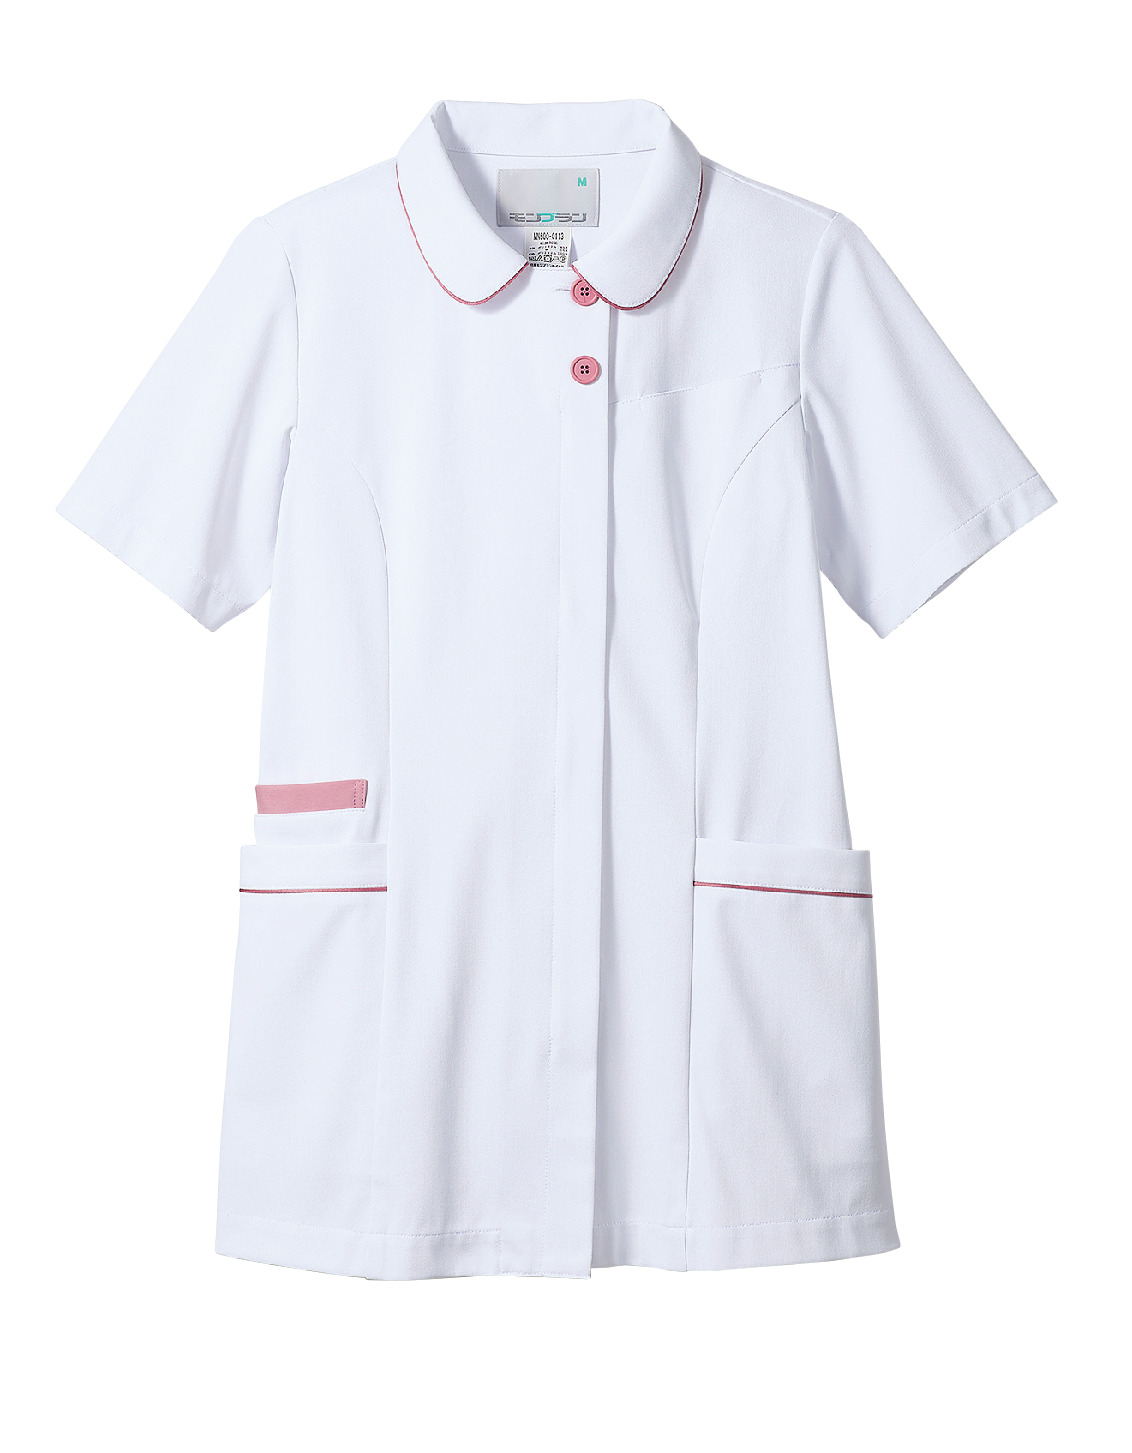 住商モンブランMN500医療用ユニフォーム通販なら東京白衣